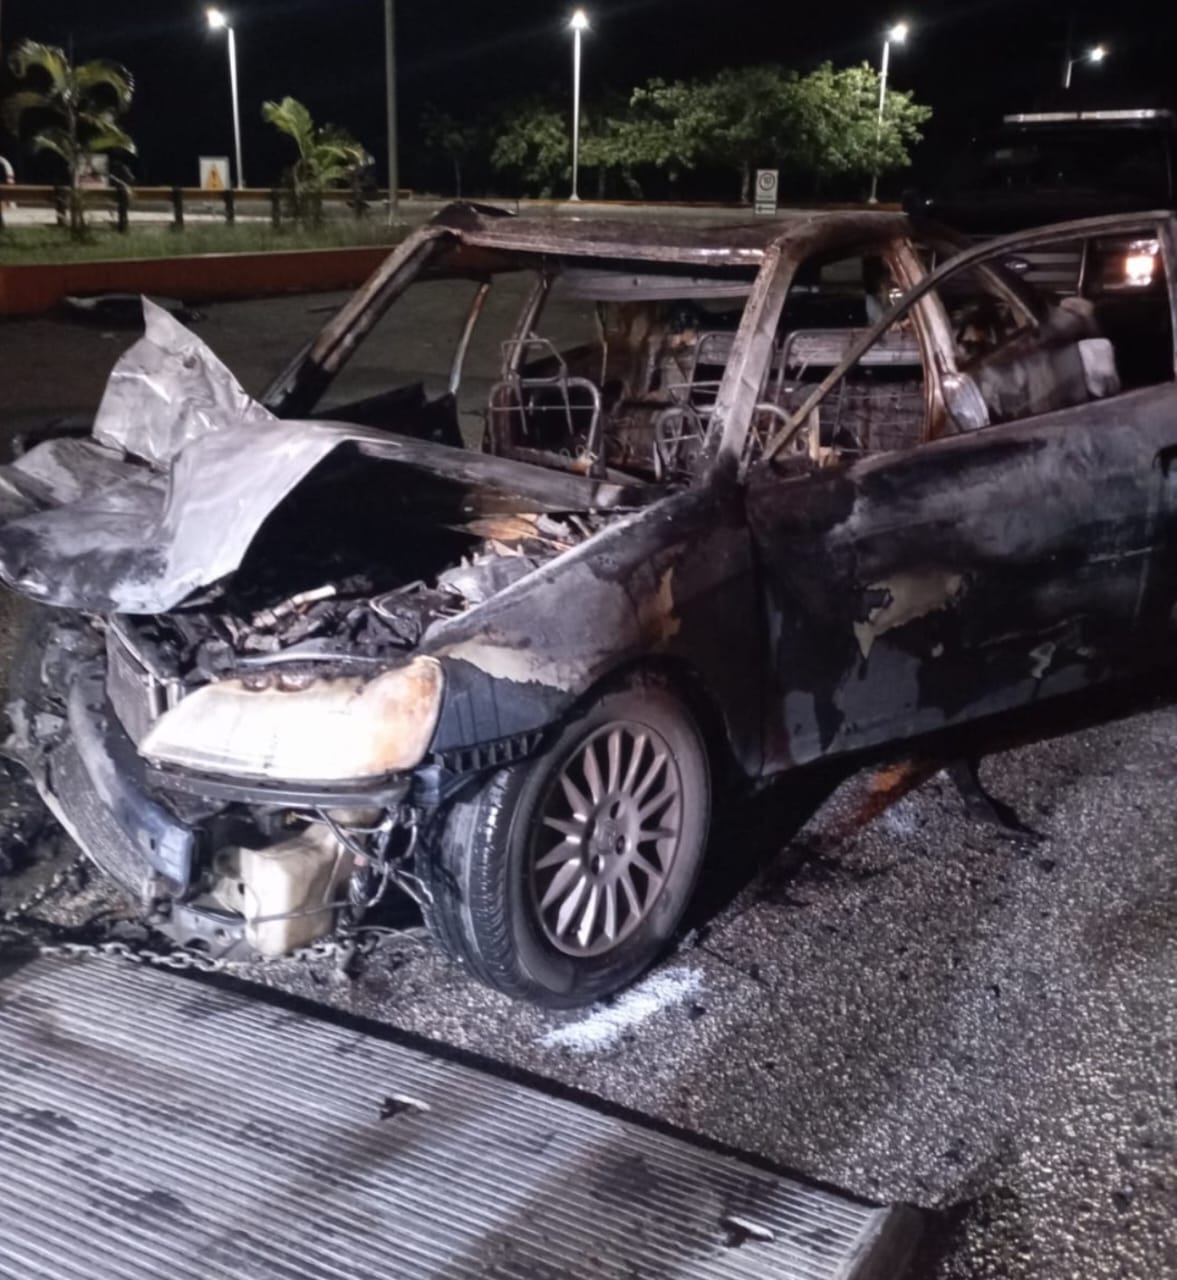 Automóvil incendiado en Valladolid, la conductora y dos menores sin daños de gravedad.